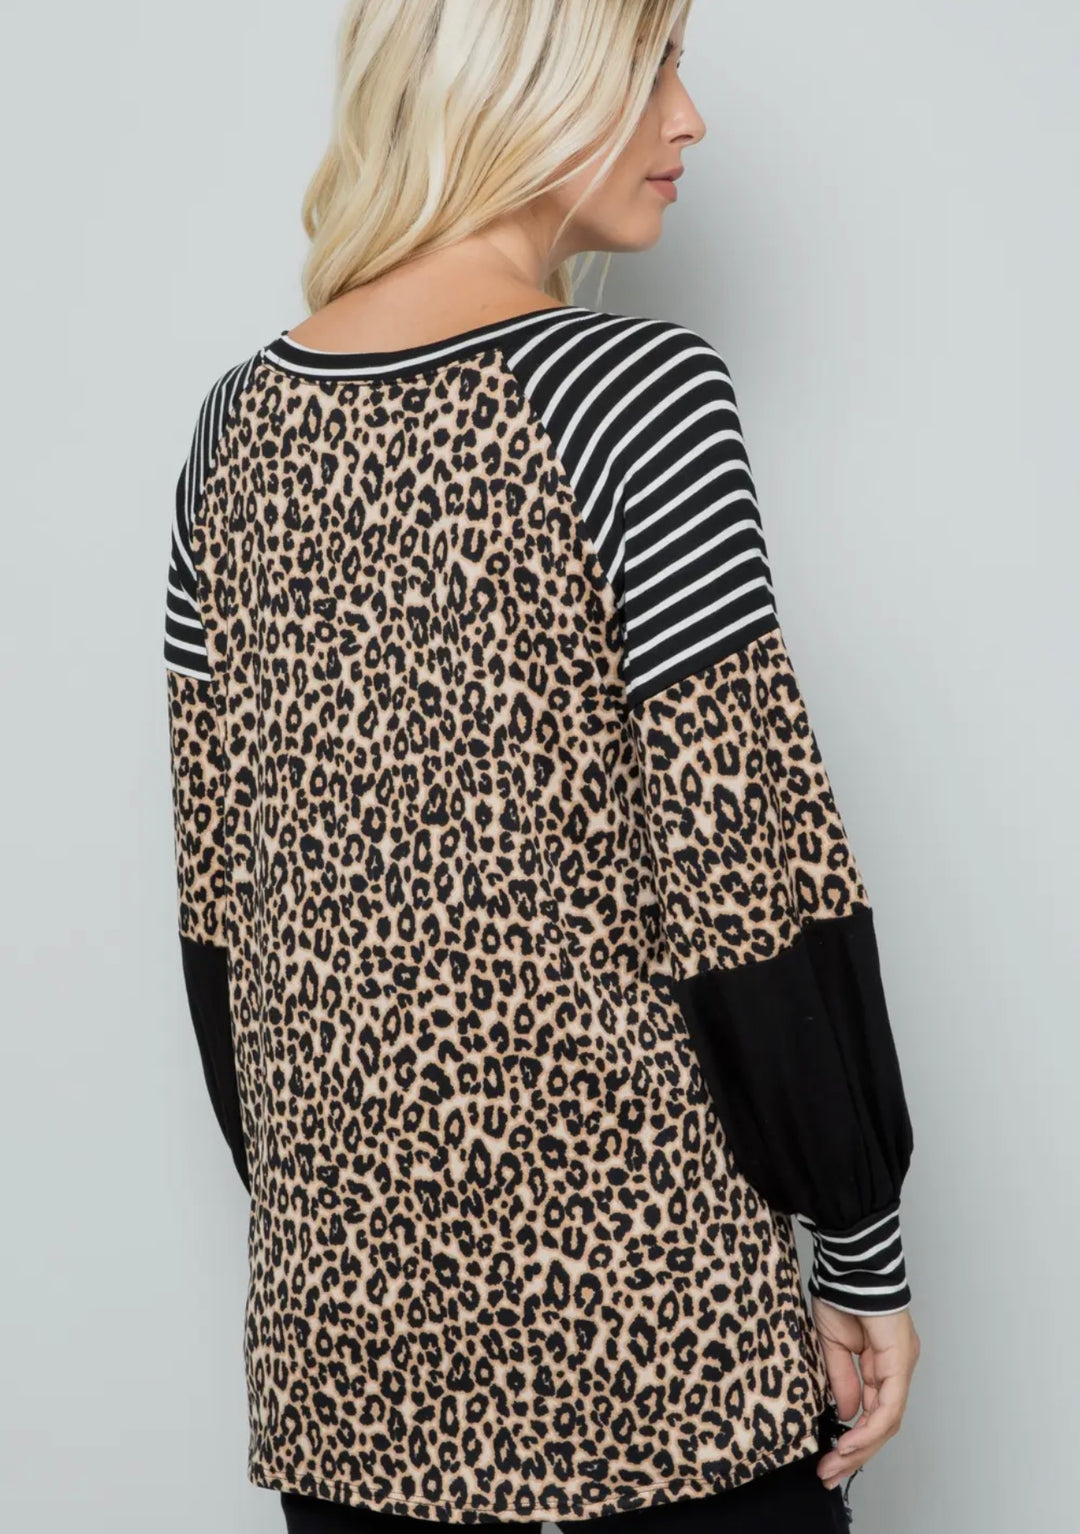 Women's Animal print Top with Black & White Stripes